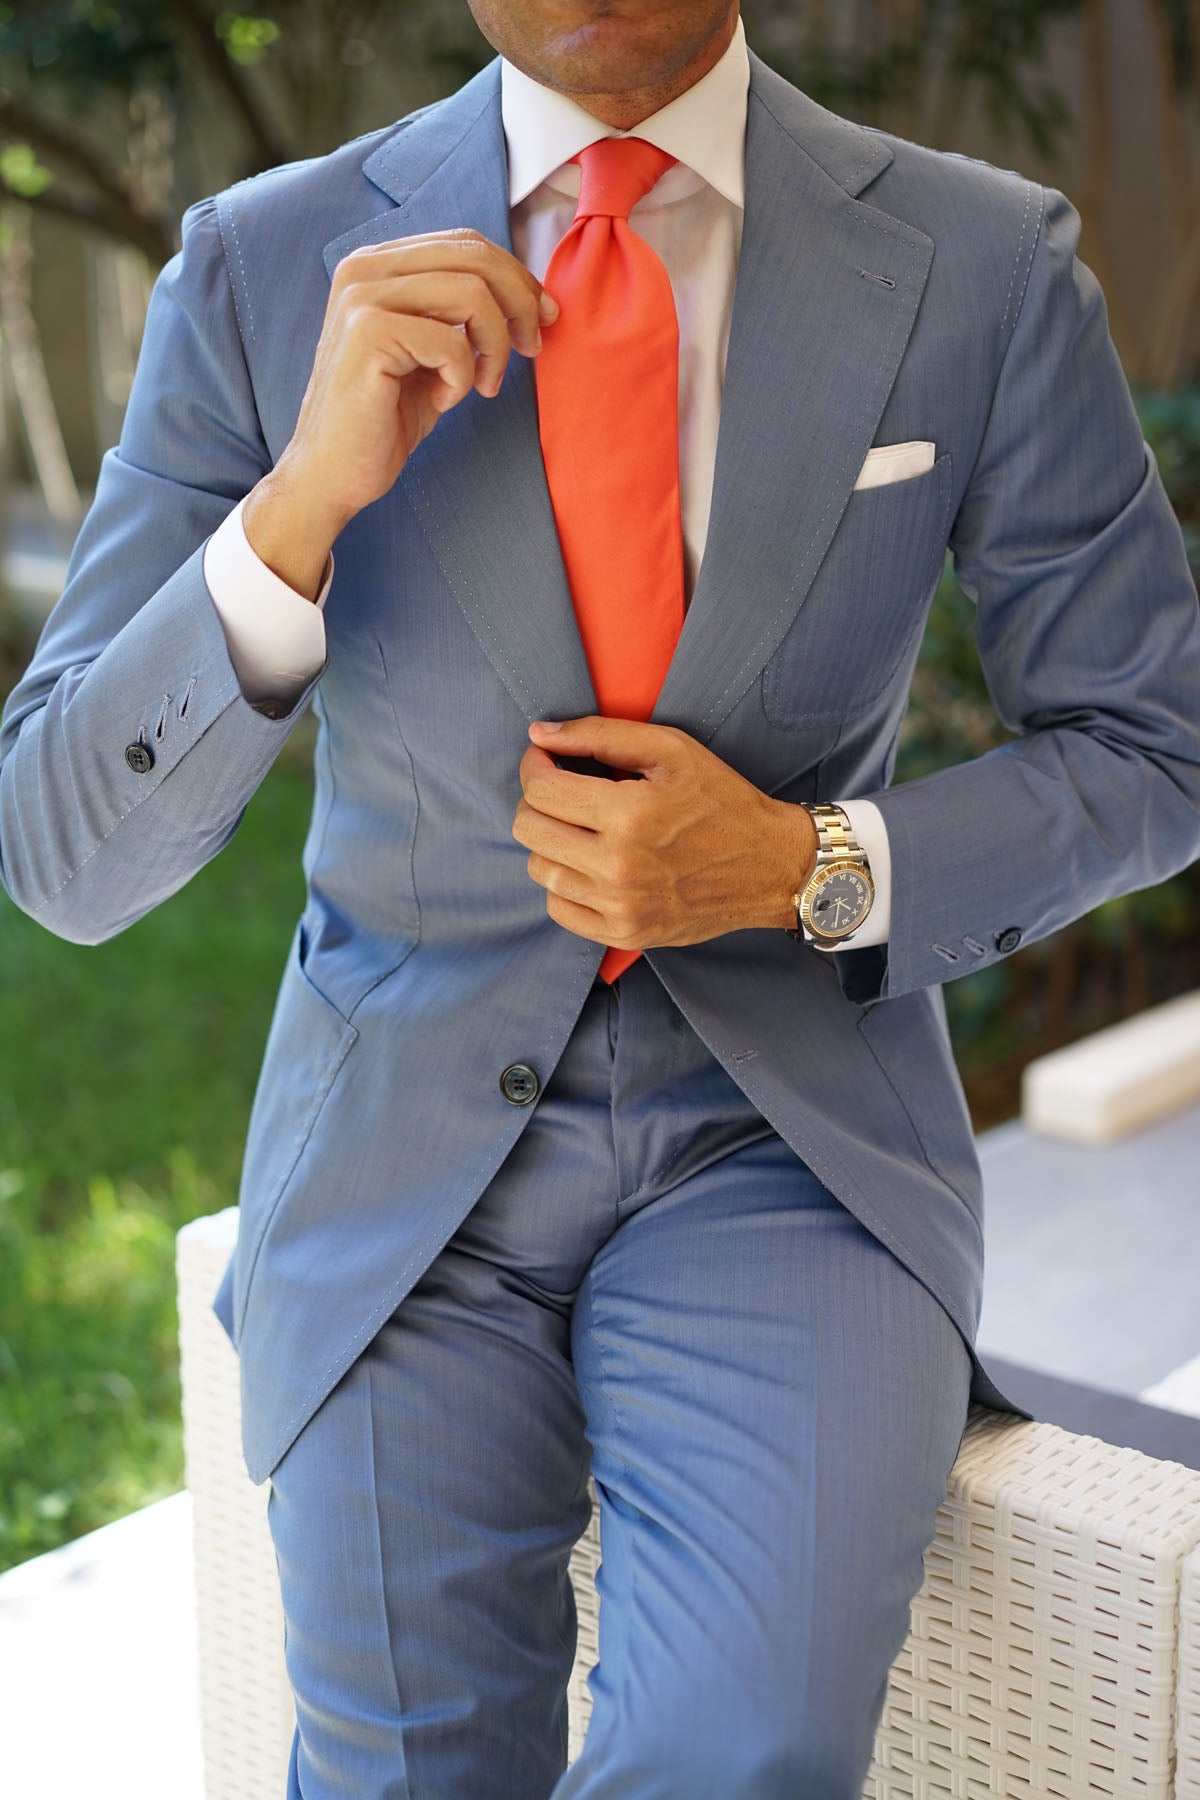 Coral Pink Cotton Necktie | David's Bridal Wedding Tie | Men's Ties AU ...